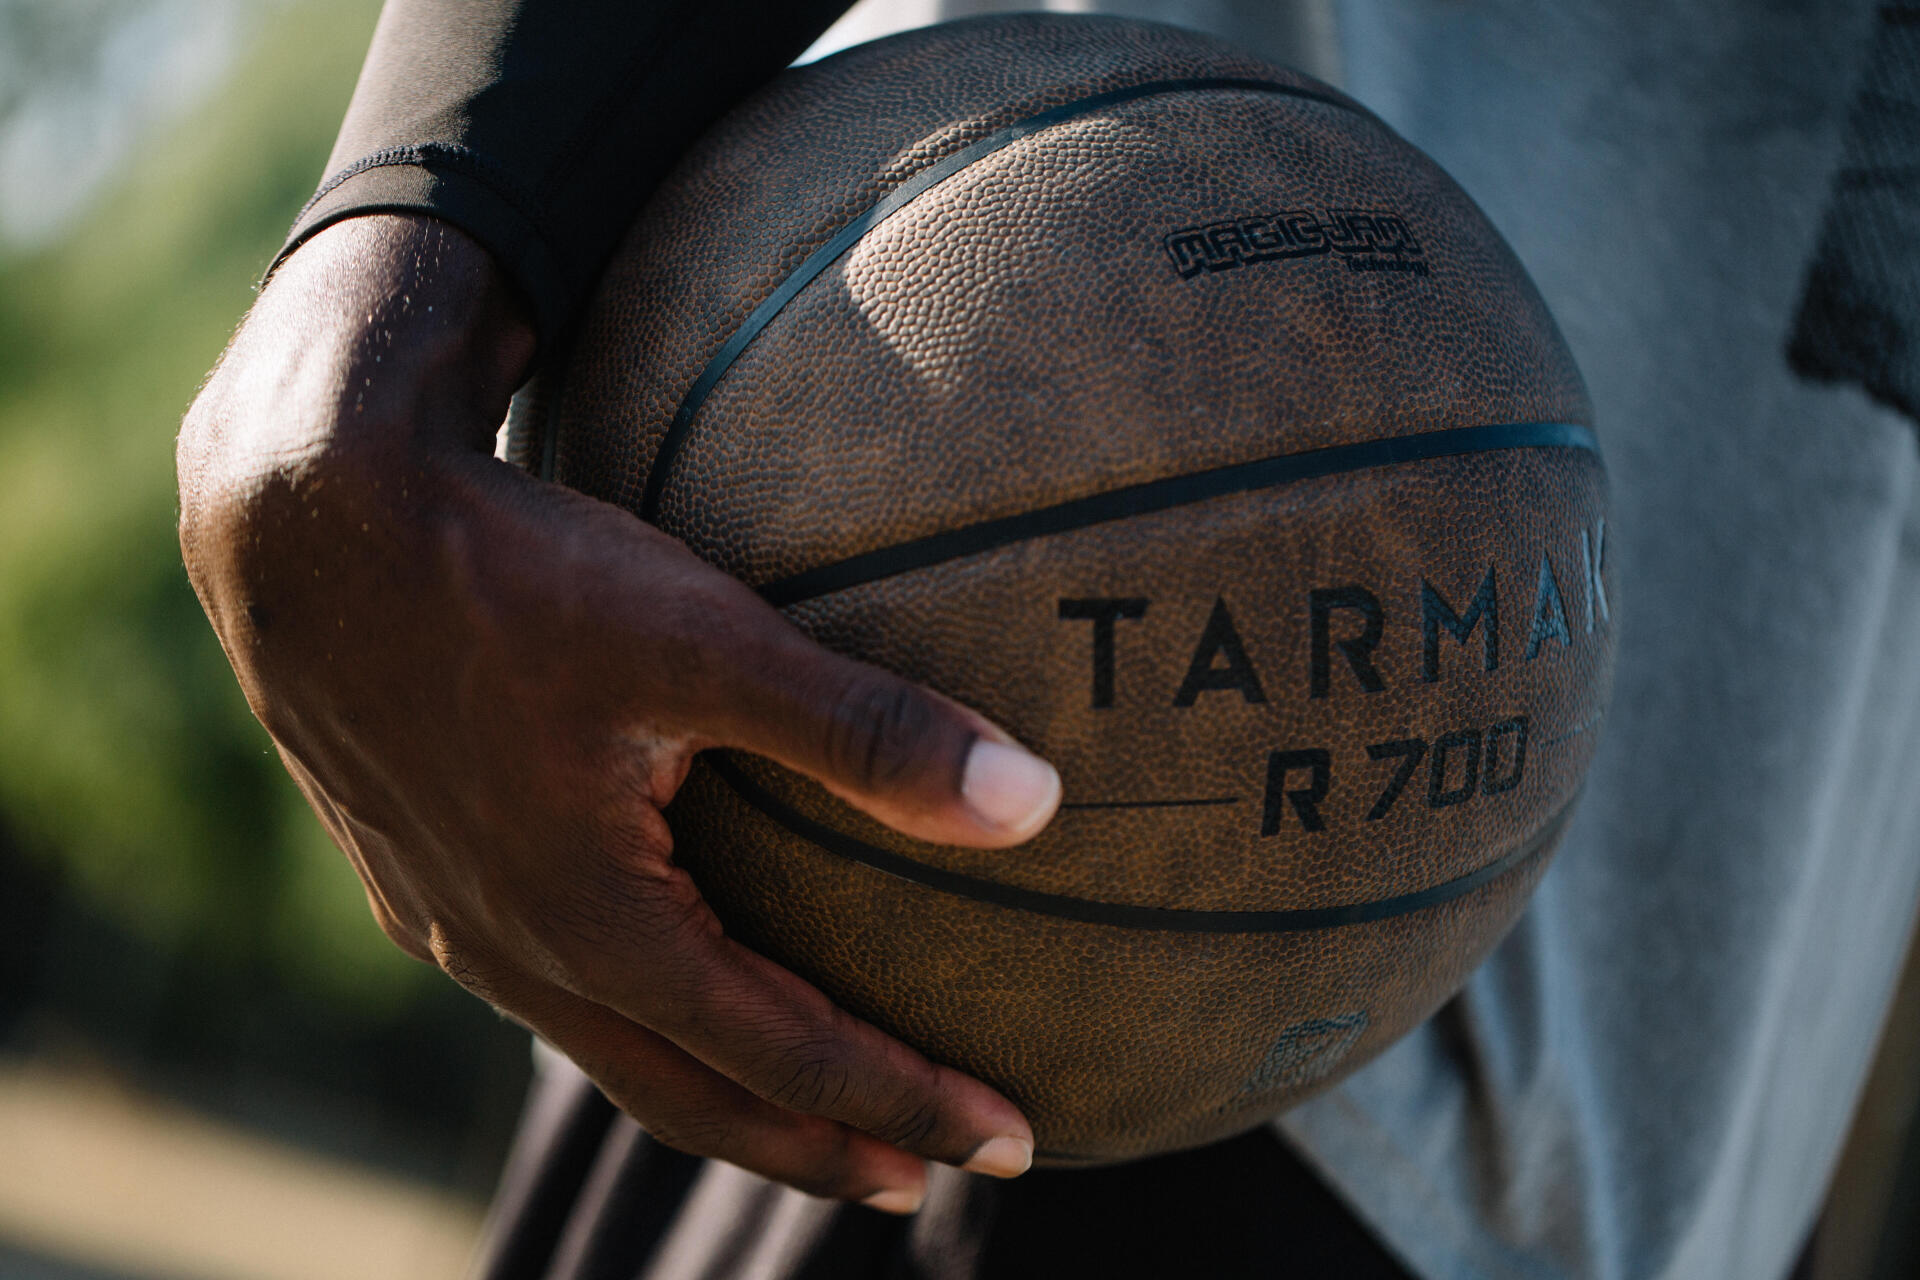 室內室外場都適合的合成皮材質籃球